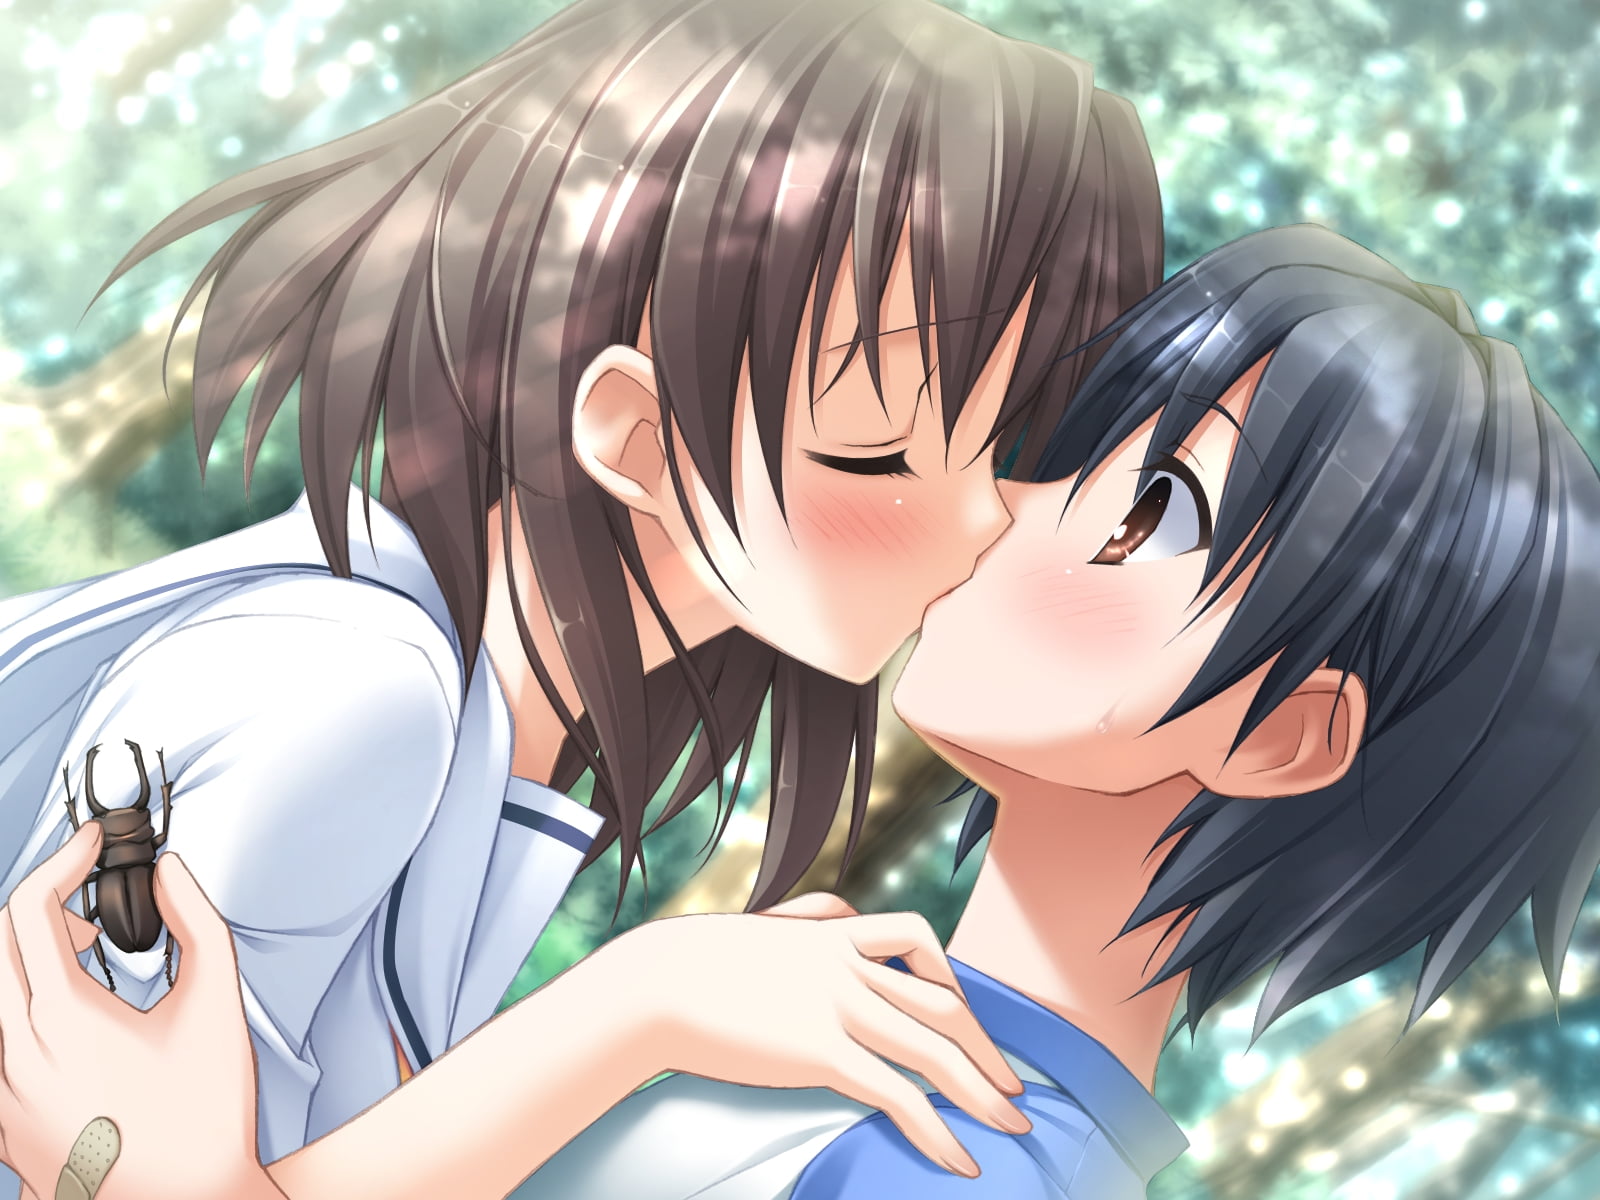 Những cặp đôi trong anime thường có những cảnh hôn cực kỳ đáng yêu và ngọt ngào. Hãy đón chờ và tìm hiểu cảm giác của những nhân vật này trong các cảnh hôn đầy lãng mạn.